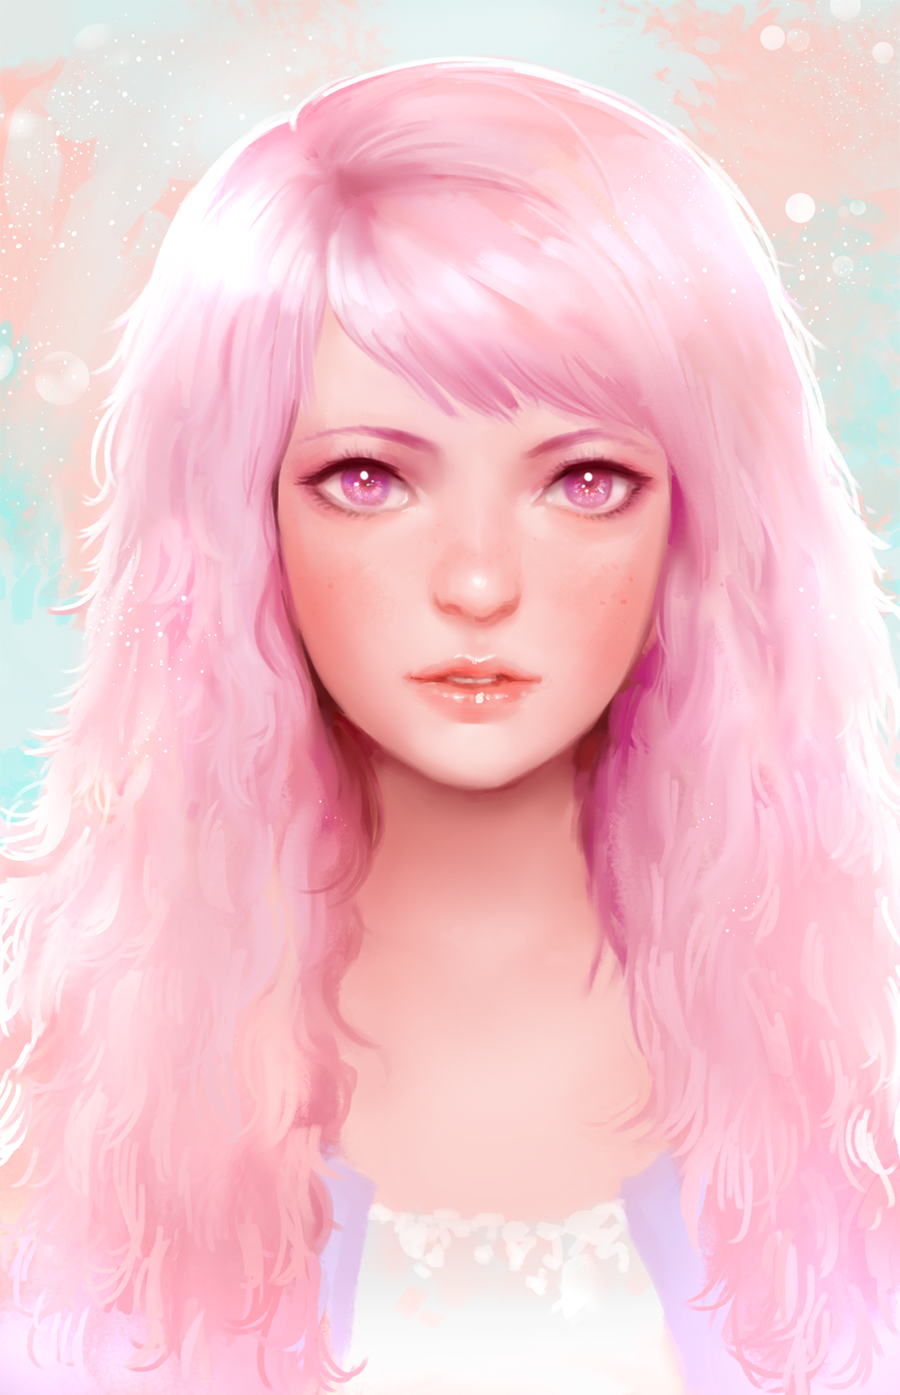 Девушка арт. Розовый арт. Розовые волосы арт. Арты девушек с розовыми волосами. Розовая нарисованная девочка